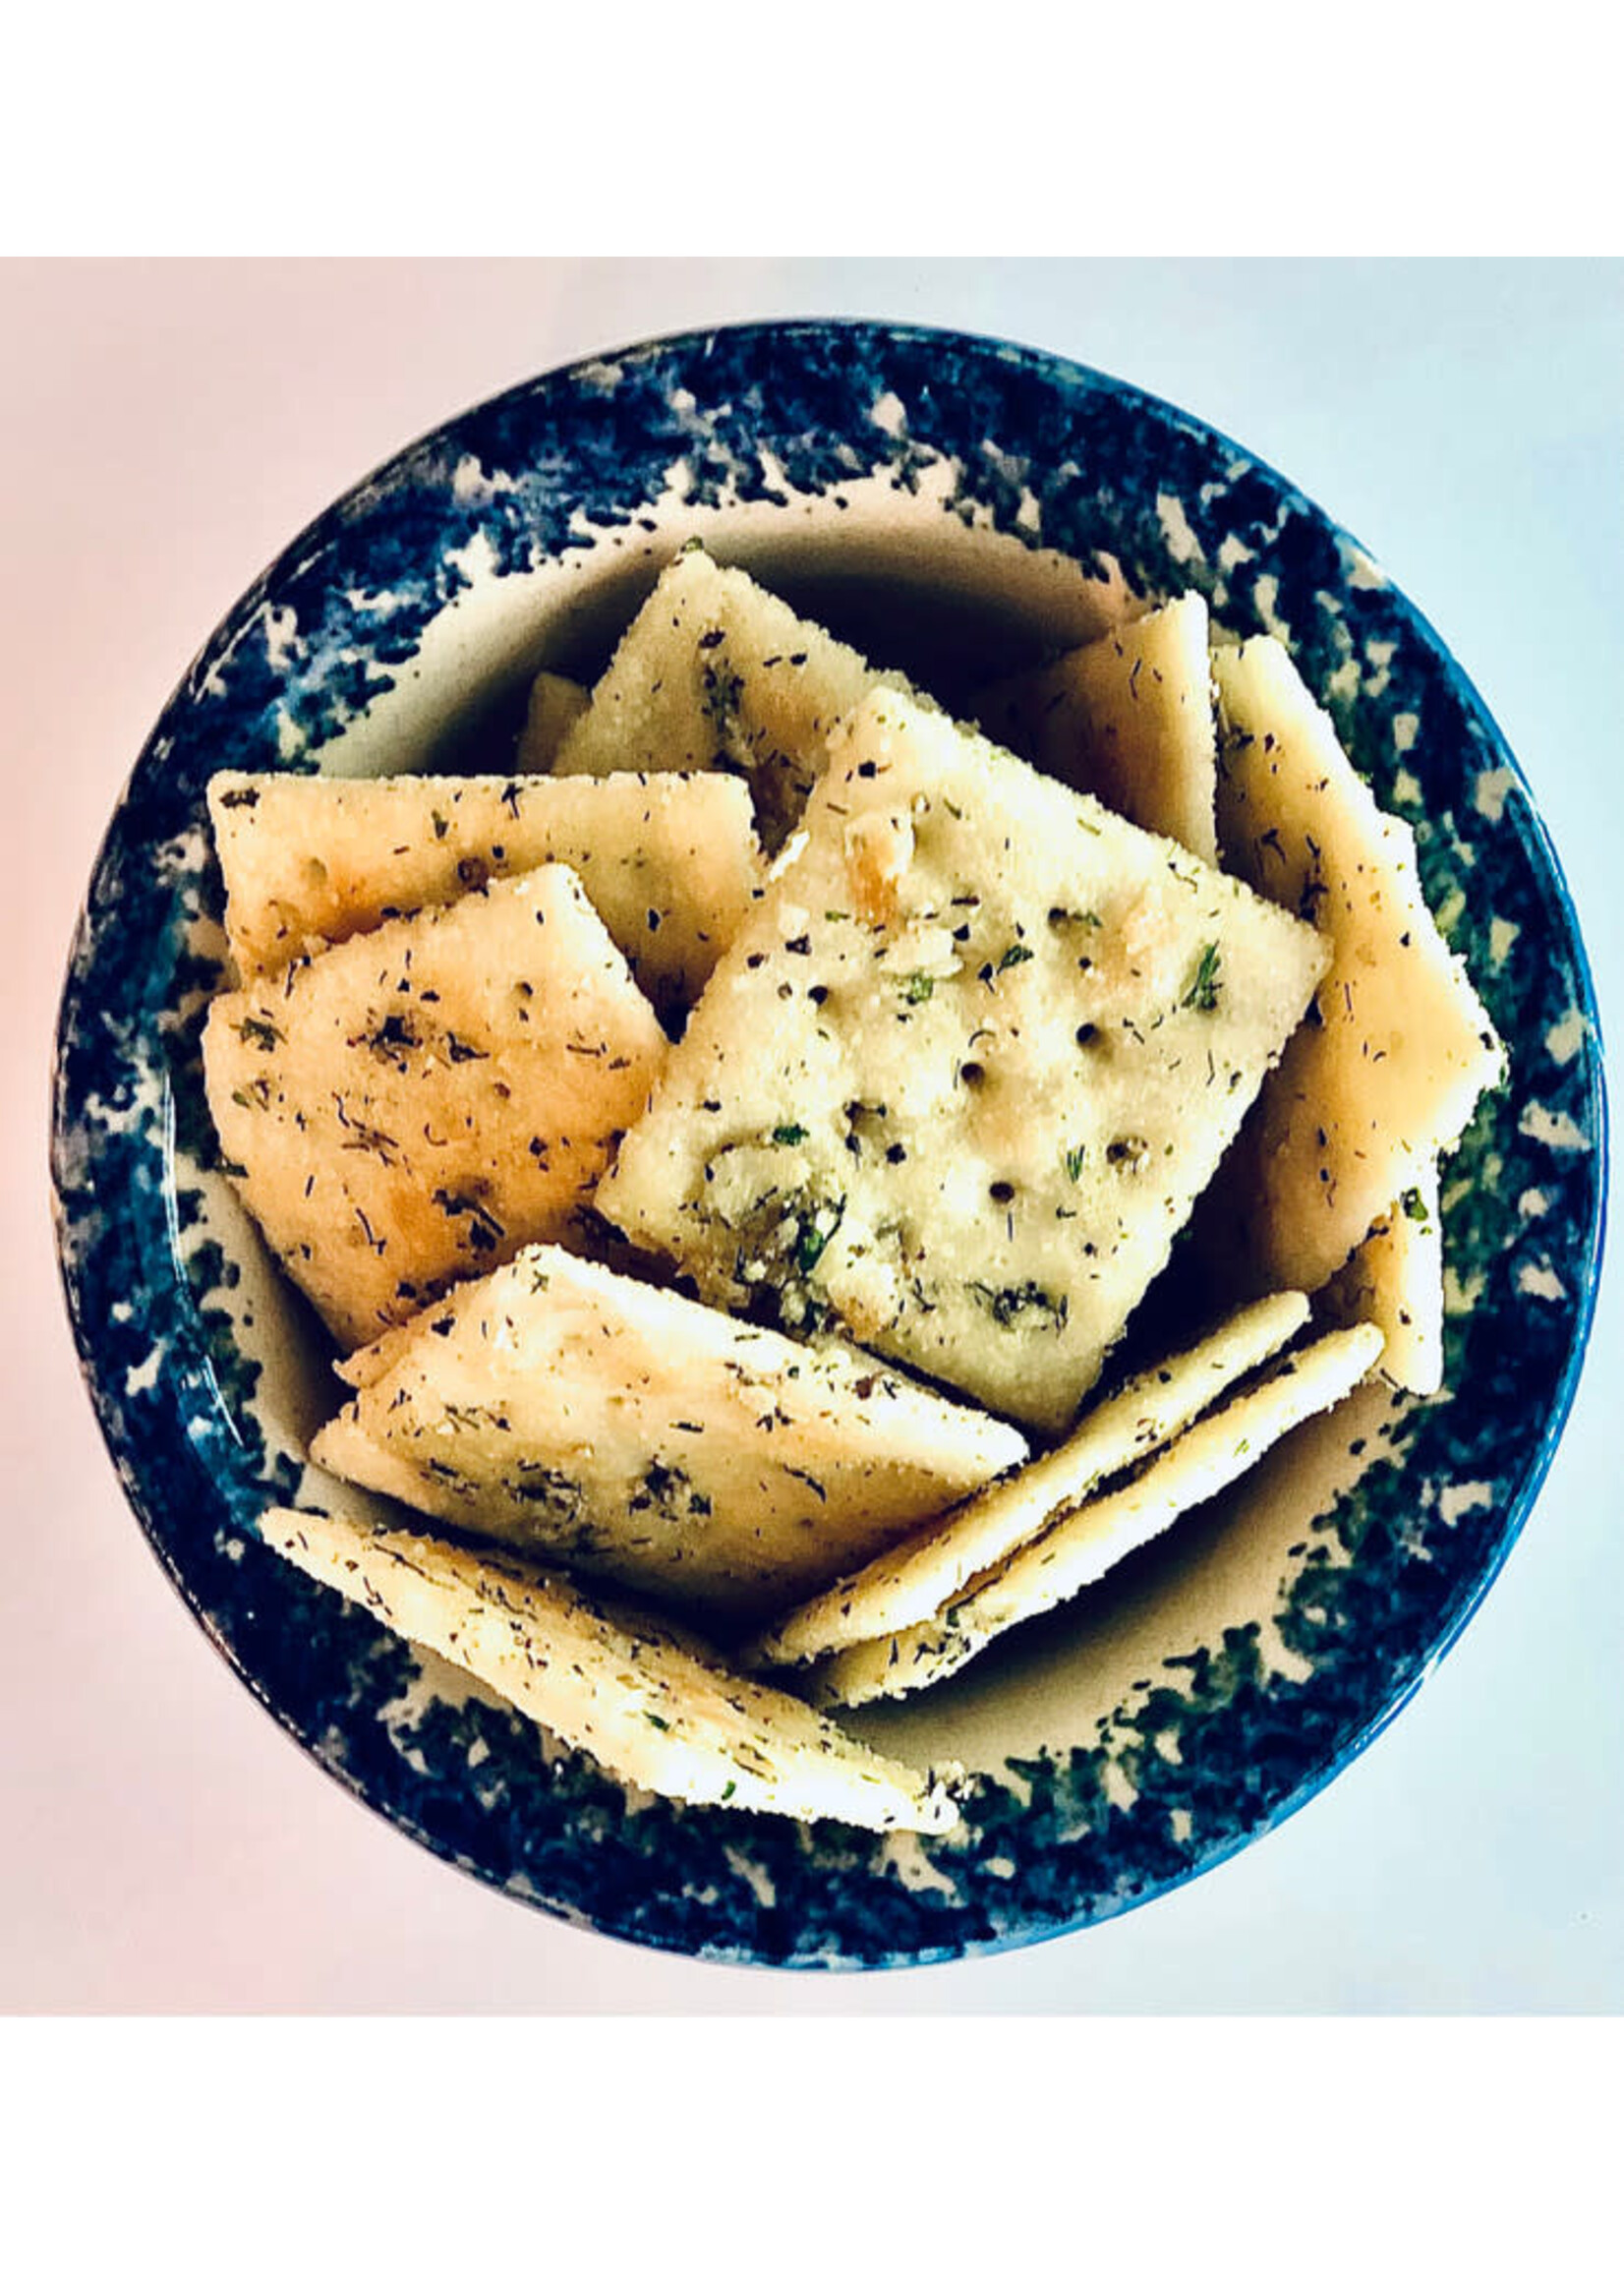 Carmies Kitchen Garlic Parmesan Cracker Seasoning Mix